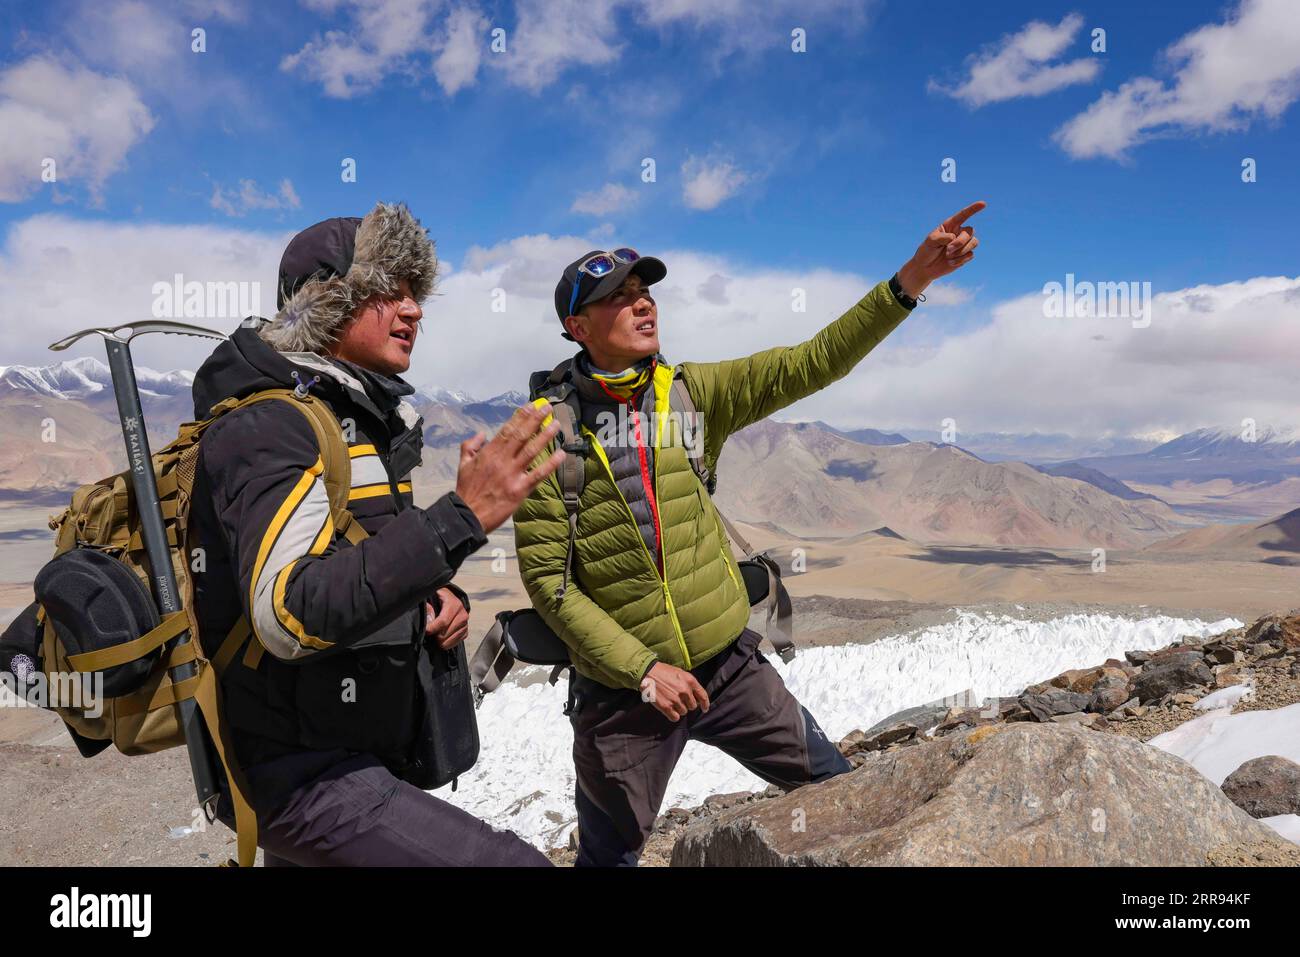 210528 -- URUMQI, 28 maggio 2021 -- Bikmirza Turdil L prende parte ad un addestramento mirato sulla Muztagh Ata nella regione autonoma di Xinjiang Uygur della Cina nord-occidentale, 15 maggio 2021. Bikmirza, un allevatore di 24 anni, nacque e crebbe ai piedi del Muztagh Ata, un picco con un'altitudine di oltre 7.500 metri, nella regione autonoma di Uygur dello Xinjiang Pamir in Cina. Ha iniziato a lavorare come guida aiutando gli scalatori a trasportare attrezzature e provviste all'età di 18 anni. Scalare il Muztagh Ata, un simbolo di coraggio, è anche considerato come la cerimonia di raggiungimento della maggiore età per i giovani locali. A Subax Villag Foto Stock